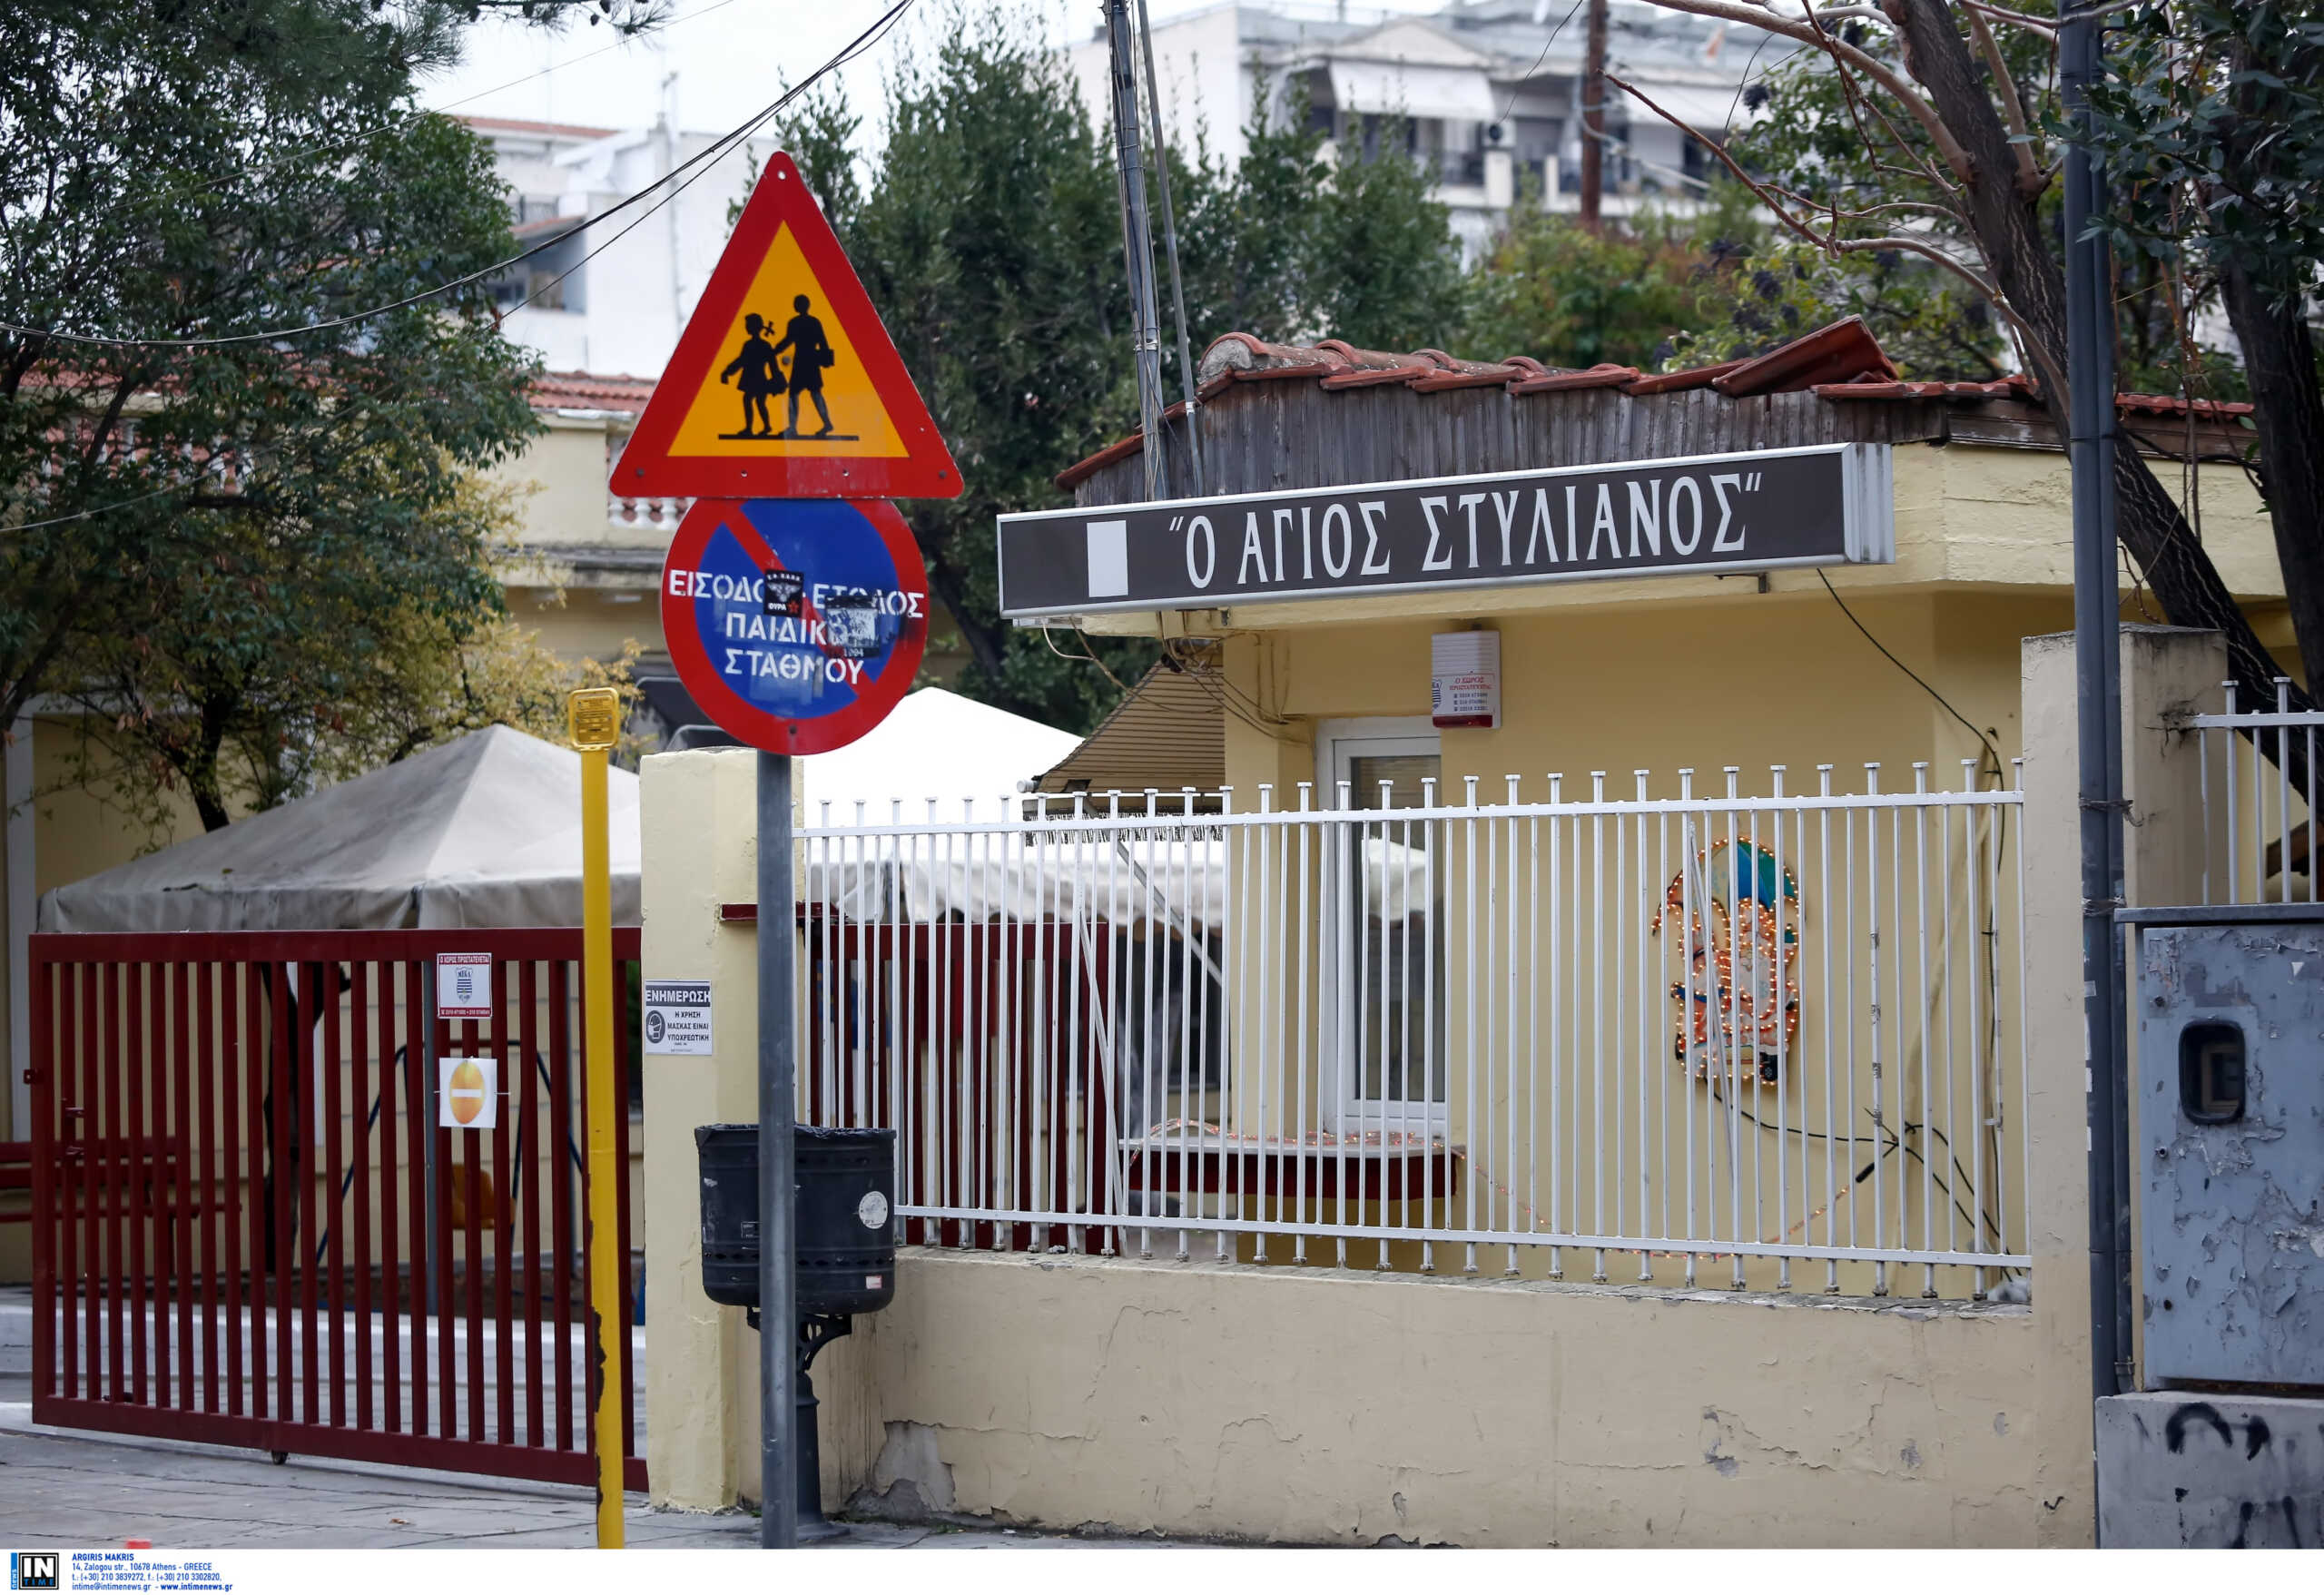 Θεσσαλονίκη: Νεκρό κοριτσάκι 2,5 ετών στο δημοτικό βρεφοκομείο Άγιος Στυλιανός